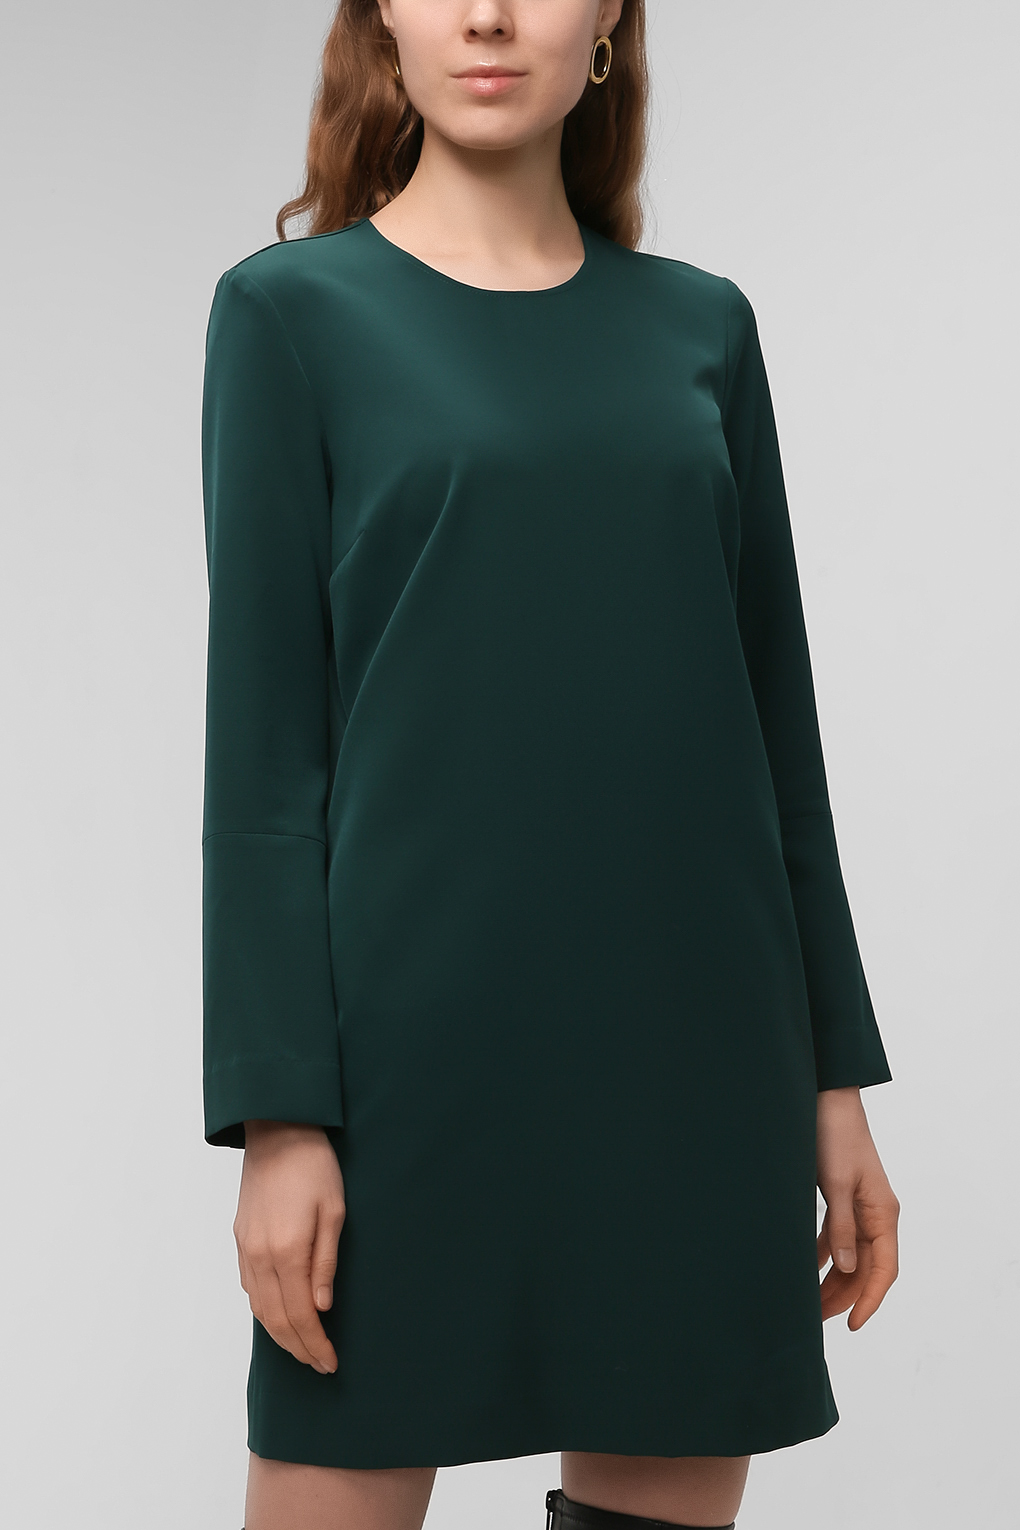 Платье женское PAOLA RAY PR221-3069 зеленое L